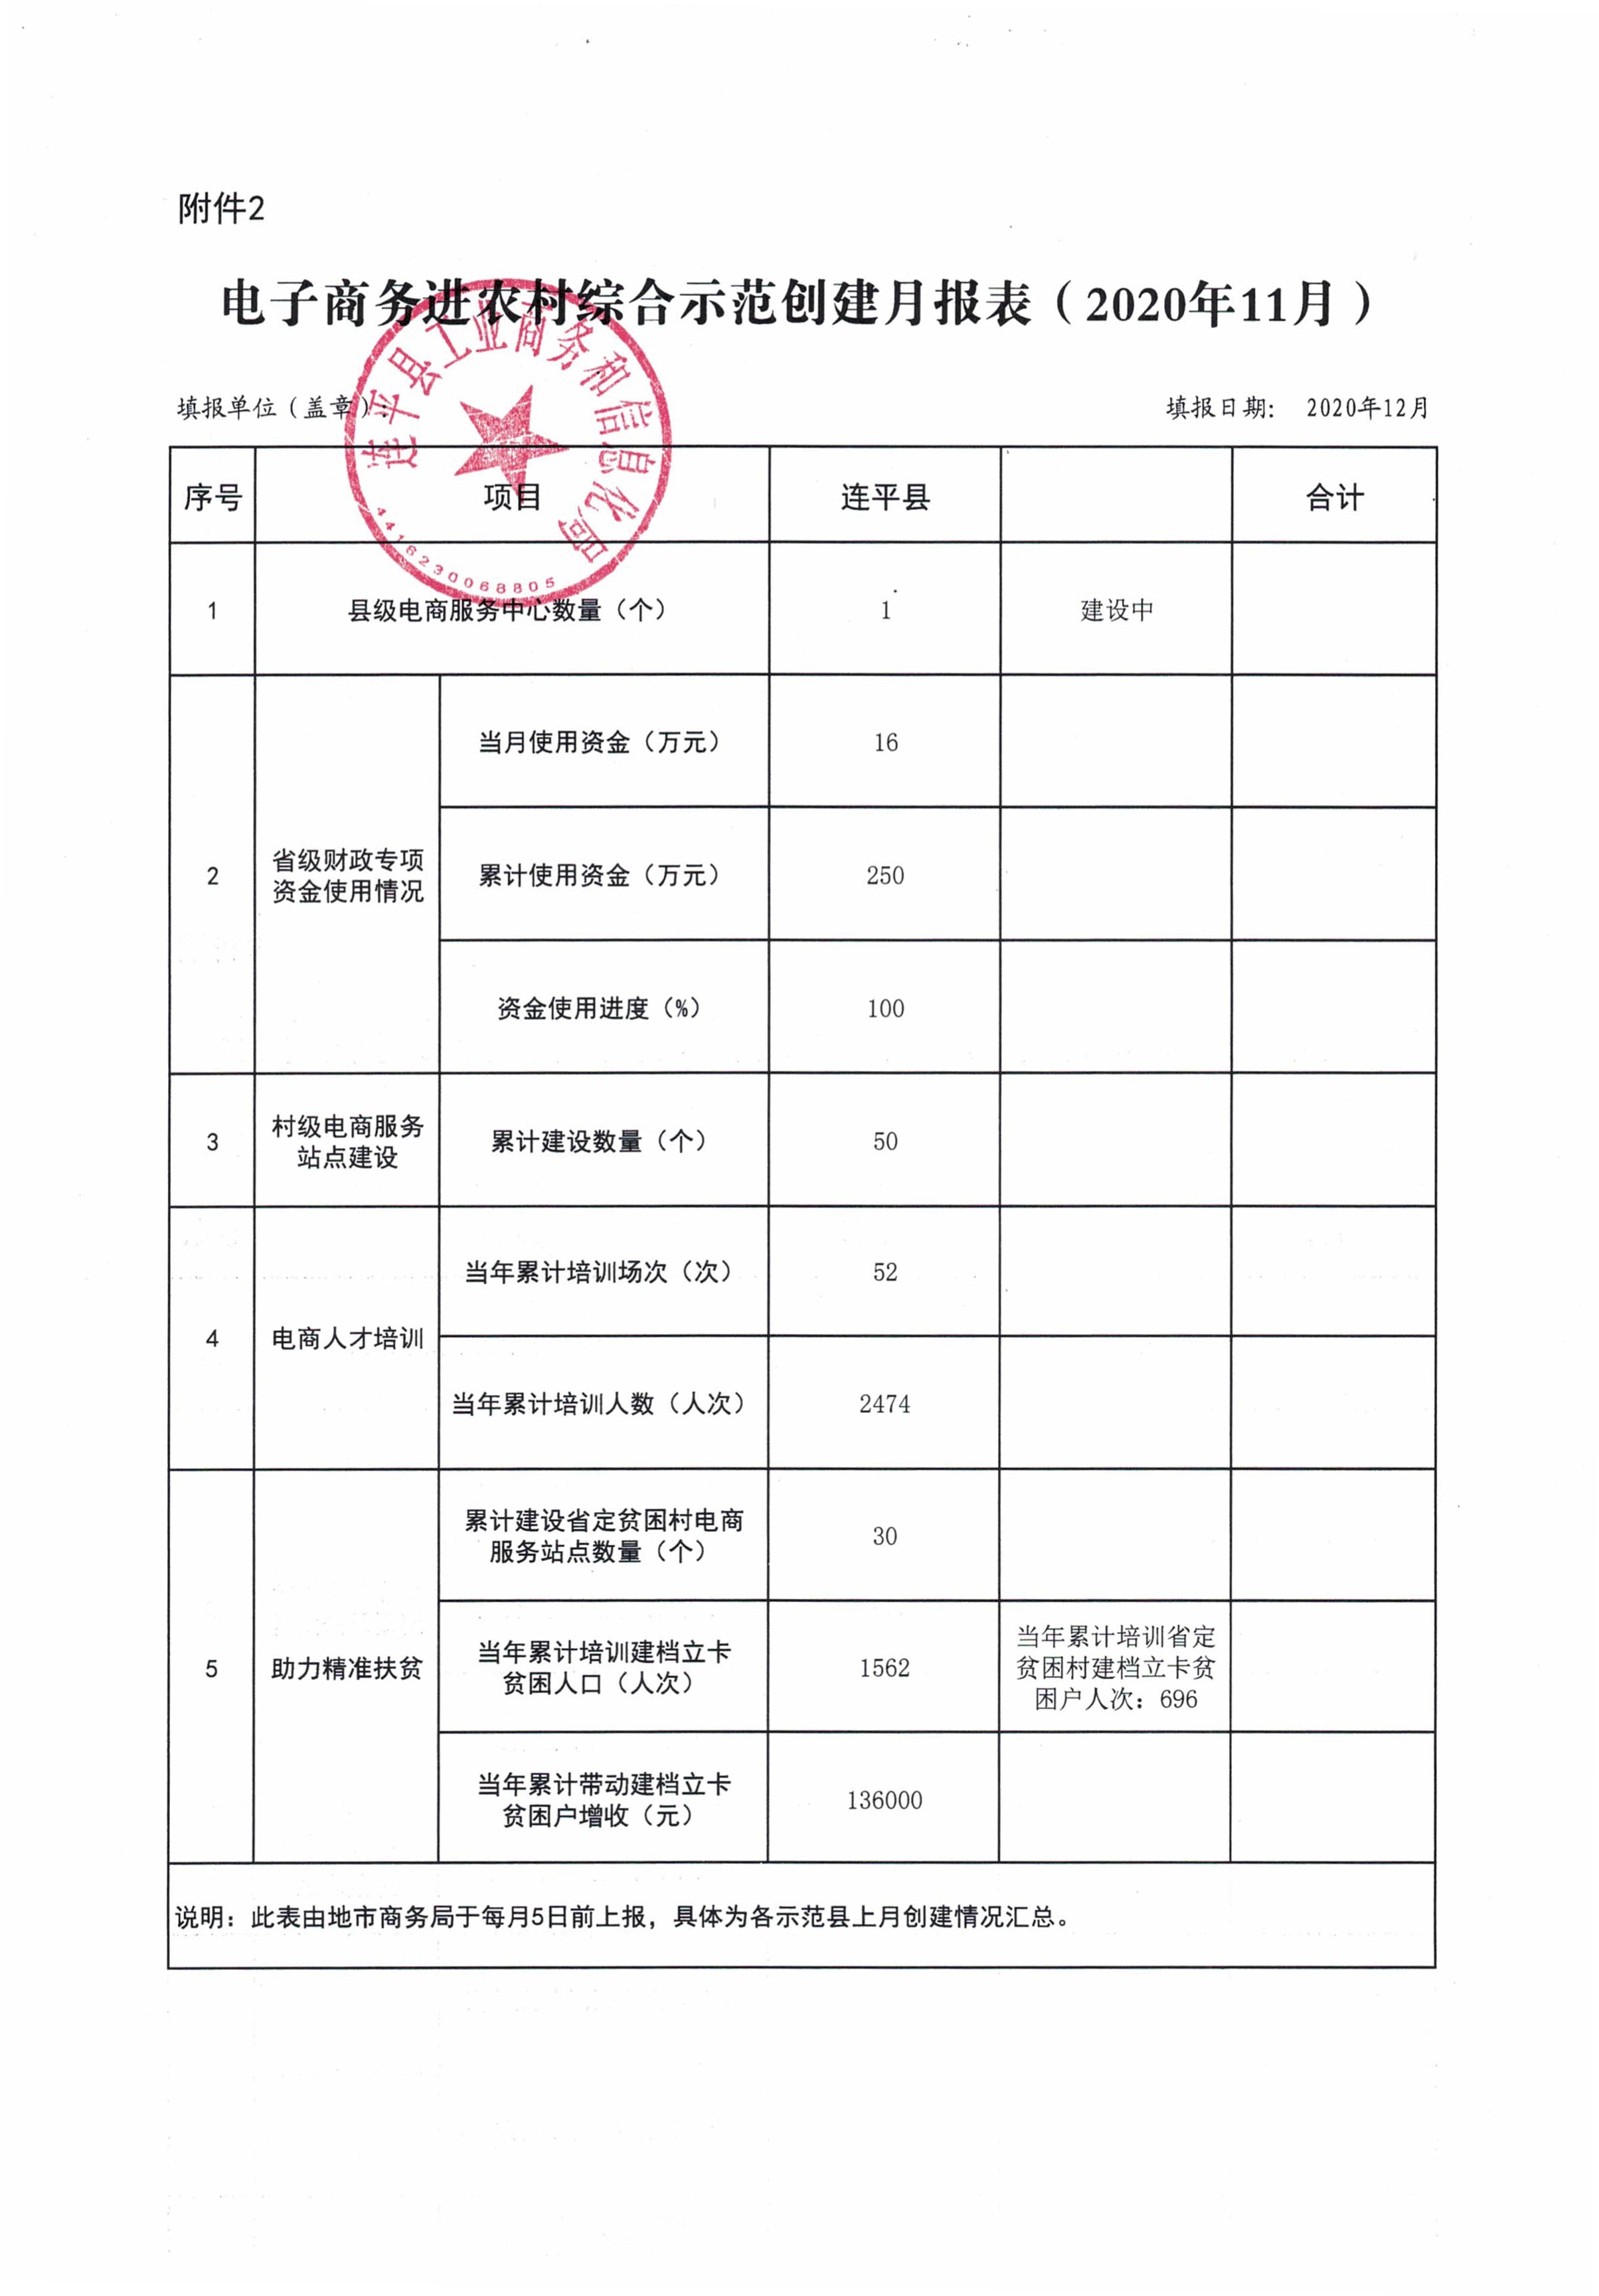 连平县省级电子商务进农村综合示范工作报表（202011）_0.jpg